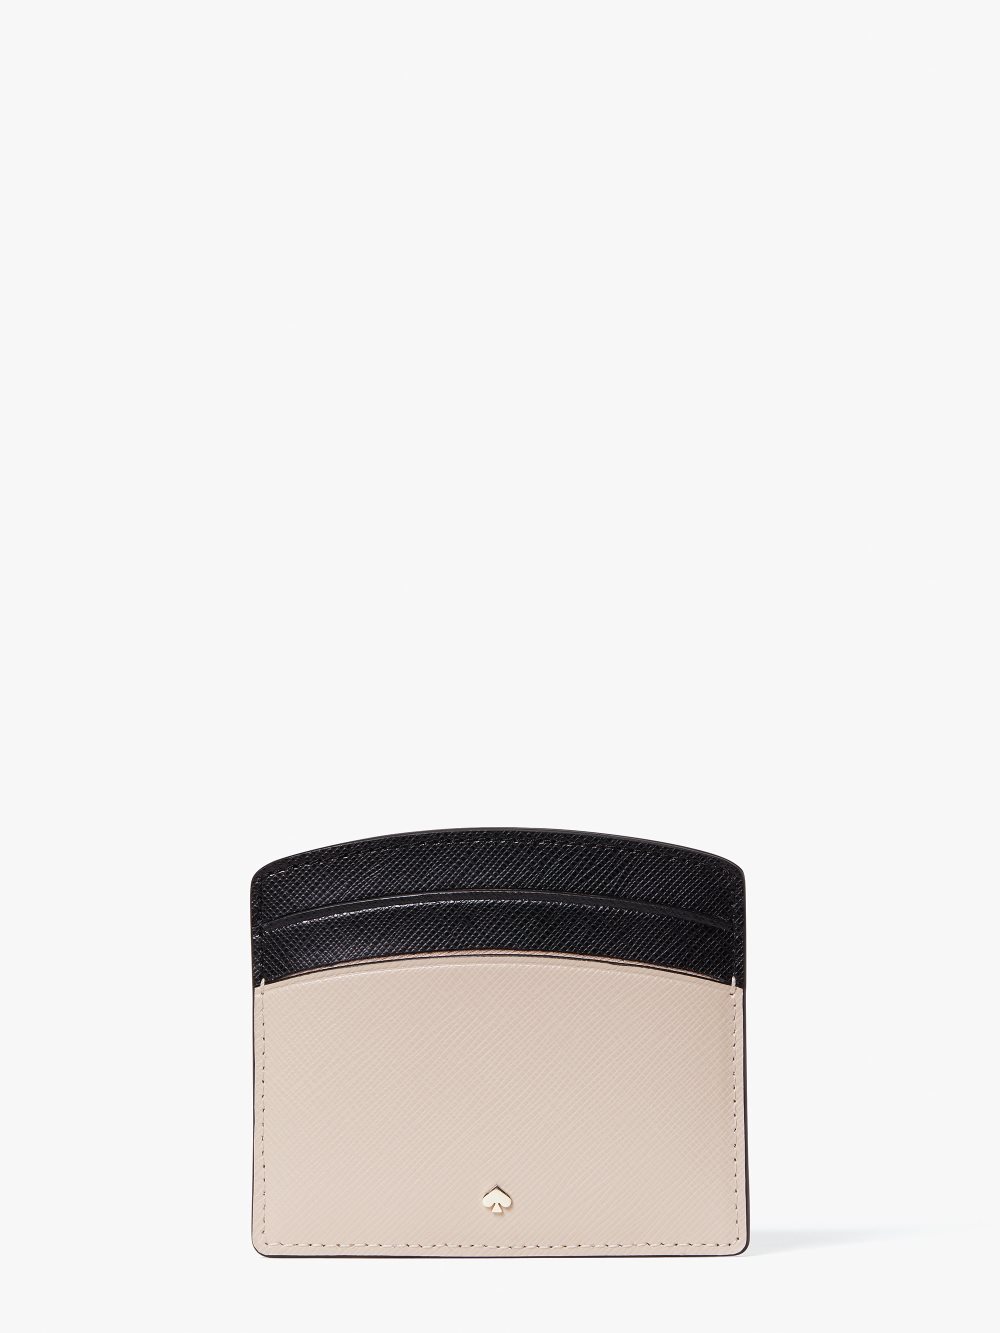 Women's warm beige/black spencer cardholder | Kate Spade